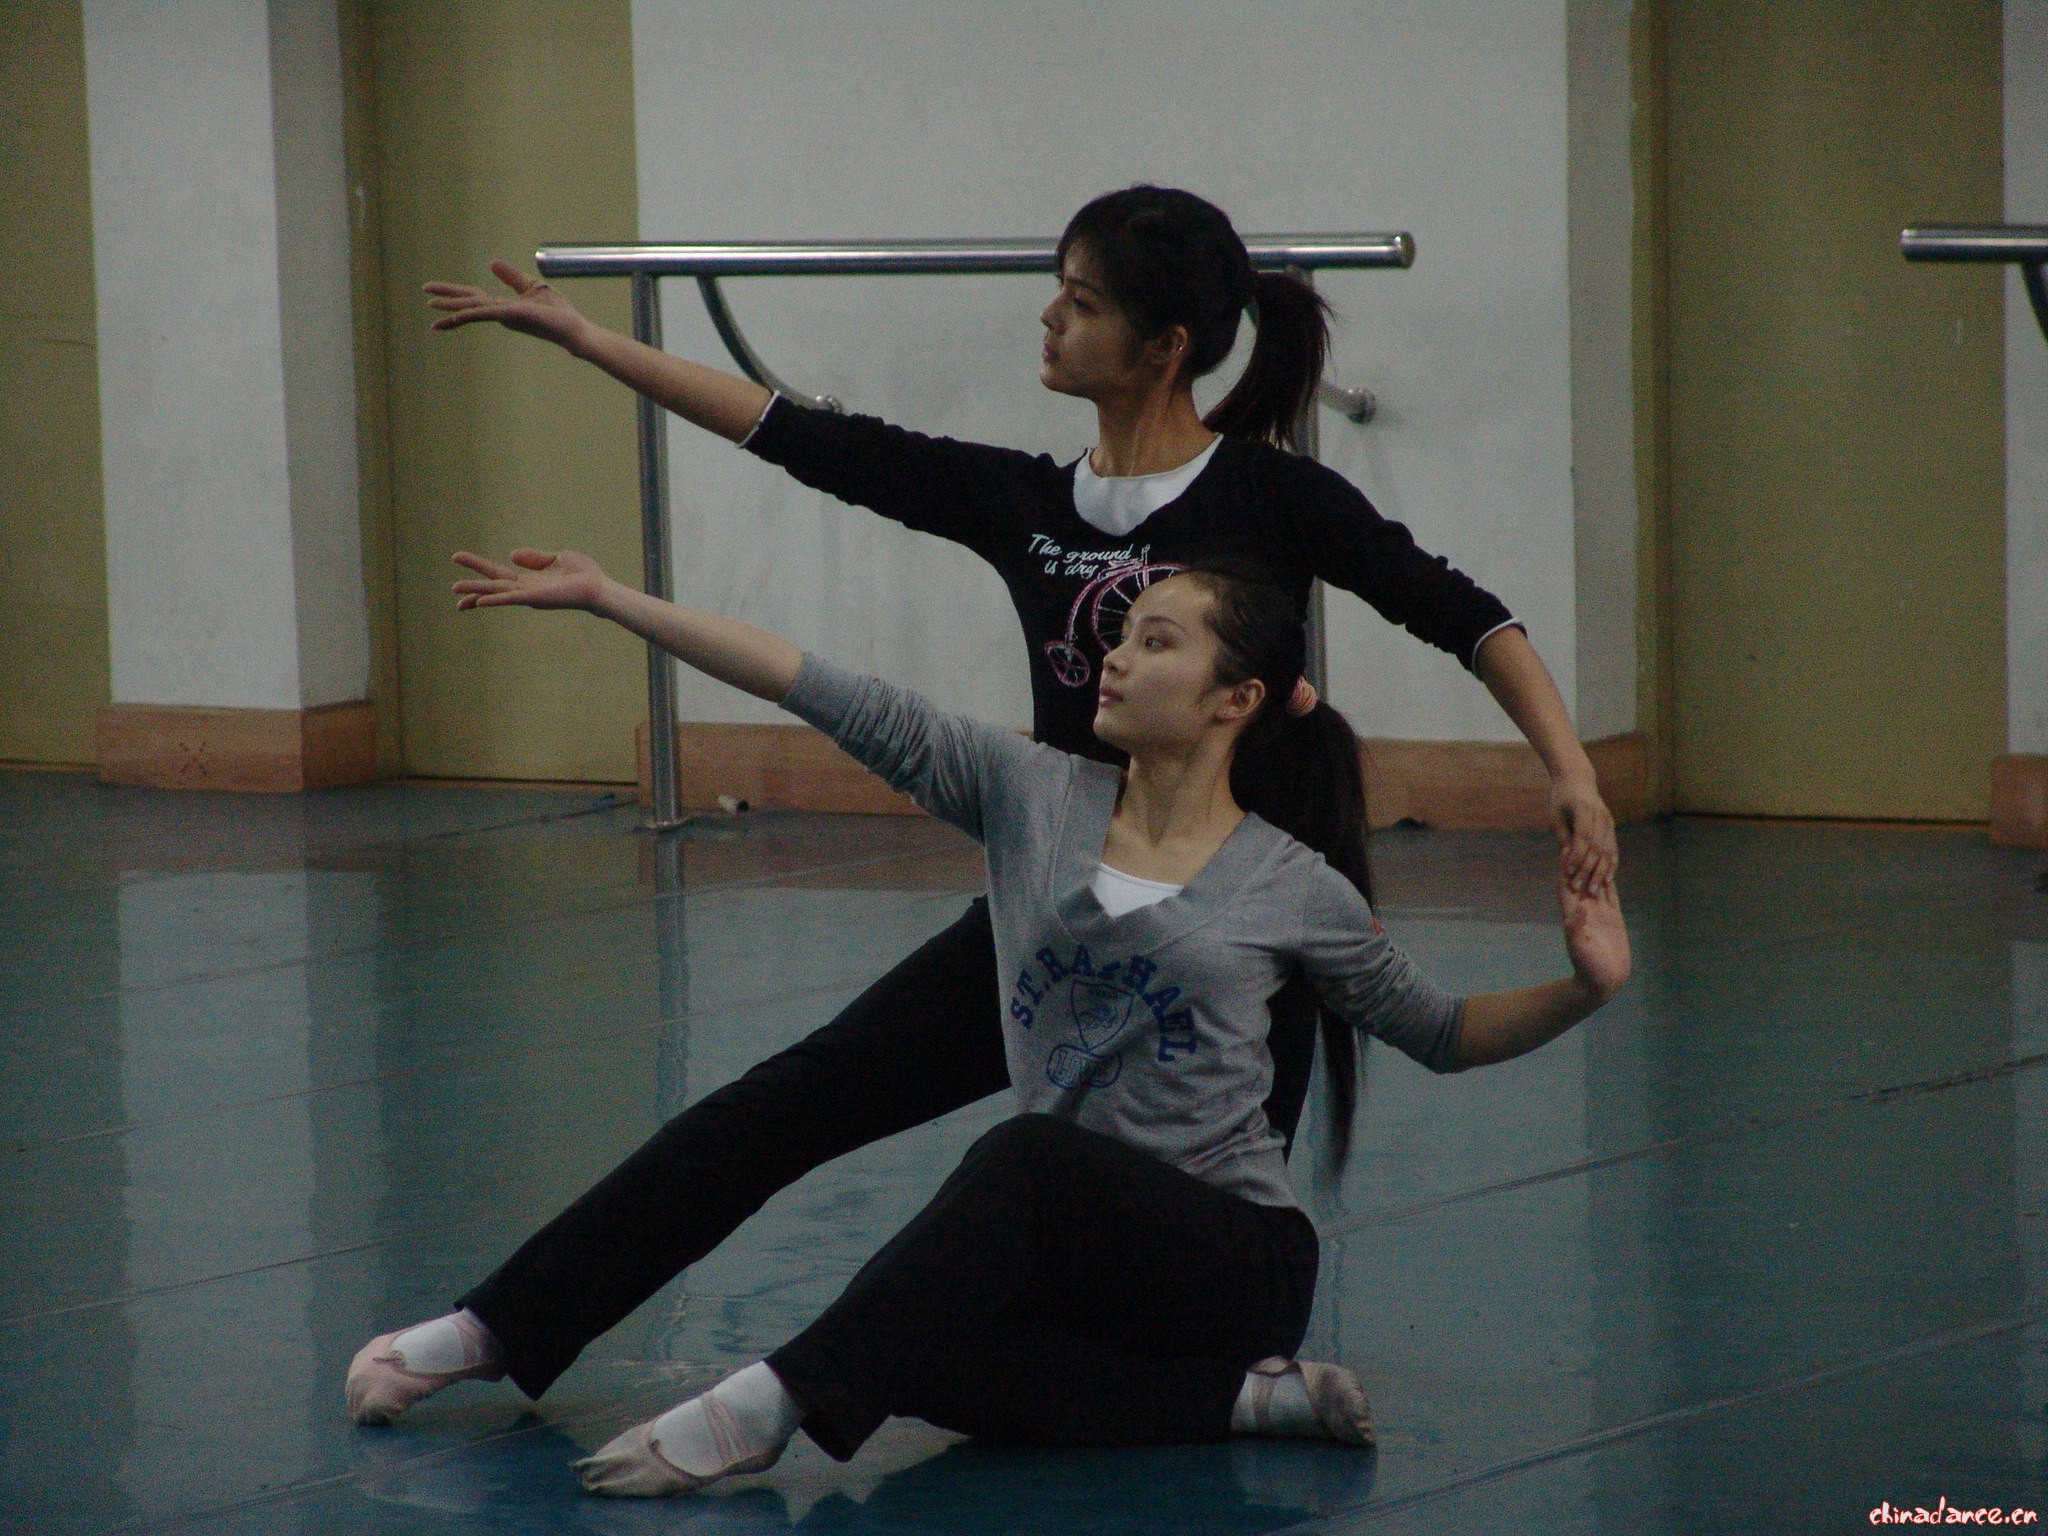 舞蹈编导、剧目实践——重庆大学美视电影学院 05级舞蹈编导班 05.JPG